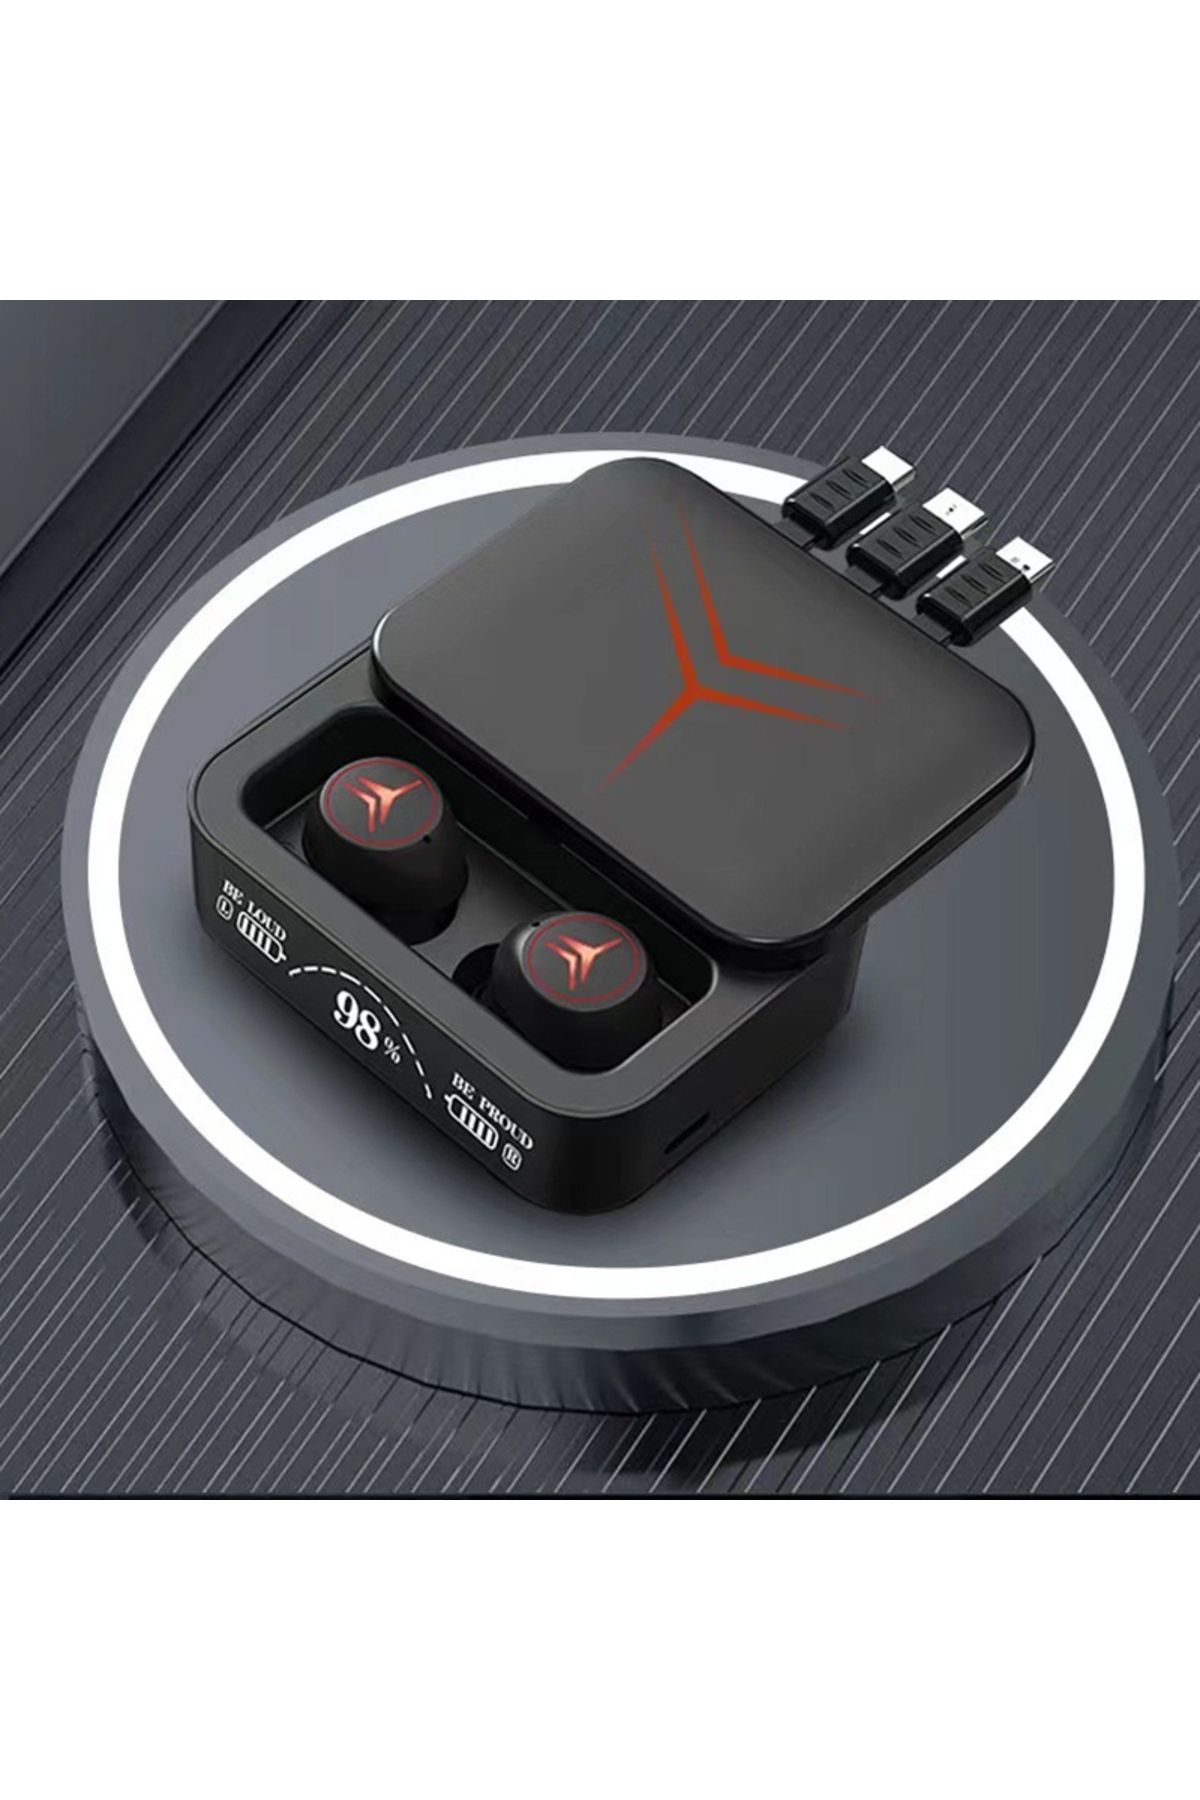 Torima M88 Plus Şarj Göstergeli Powerbank Özellikli Bluetooth Kablosuz Kulakiçi Kulaklık Siyah